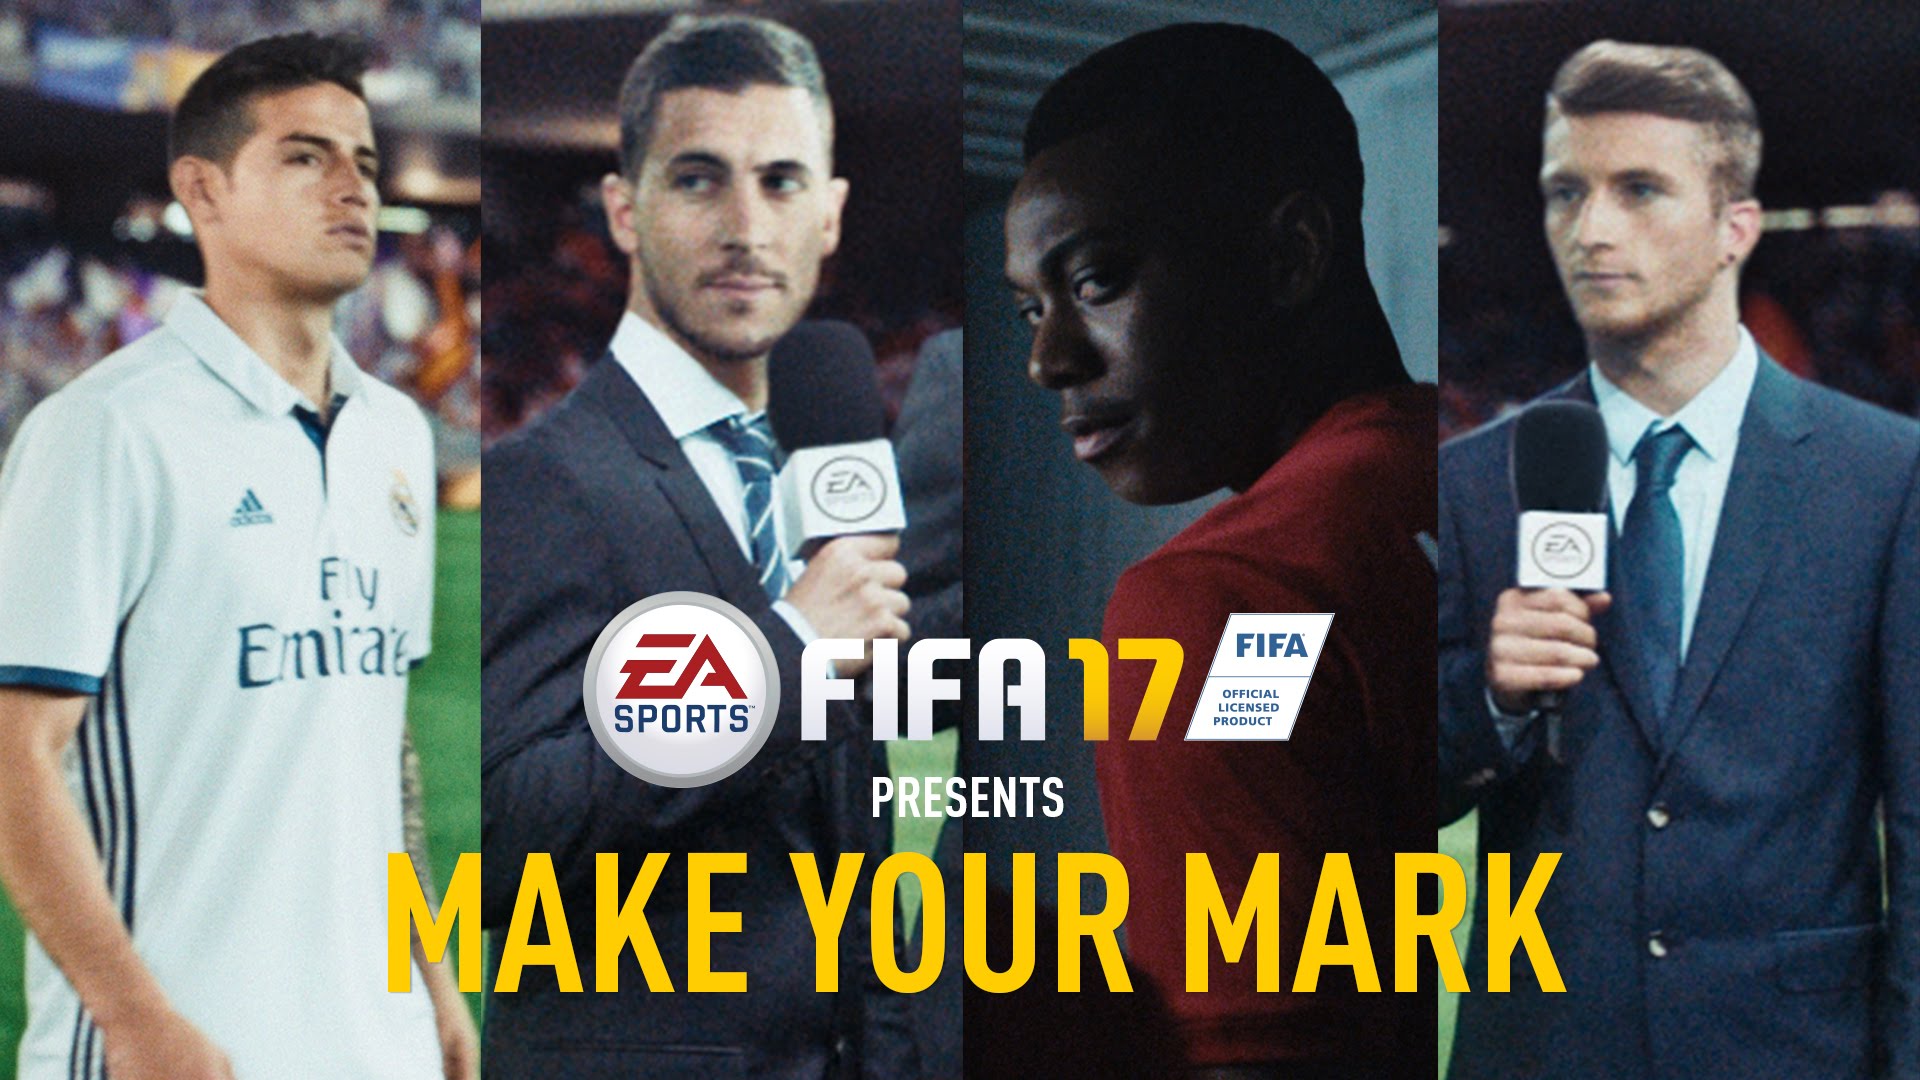 EA Sports FIFA 17 latest trailer 